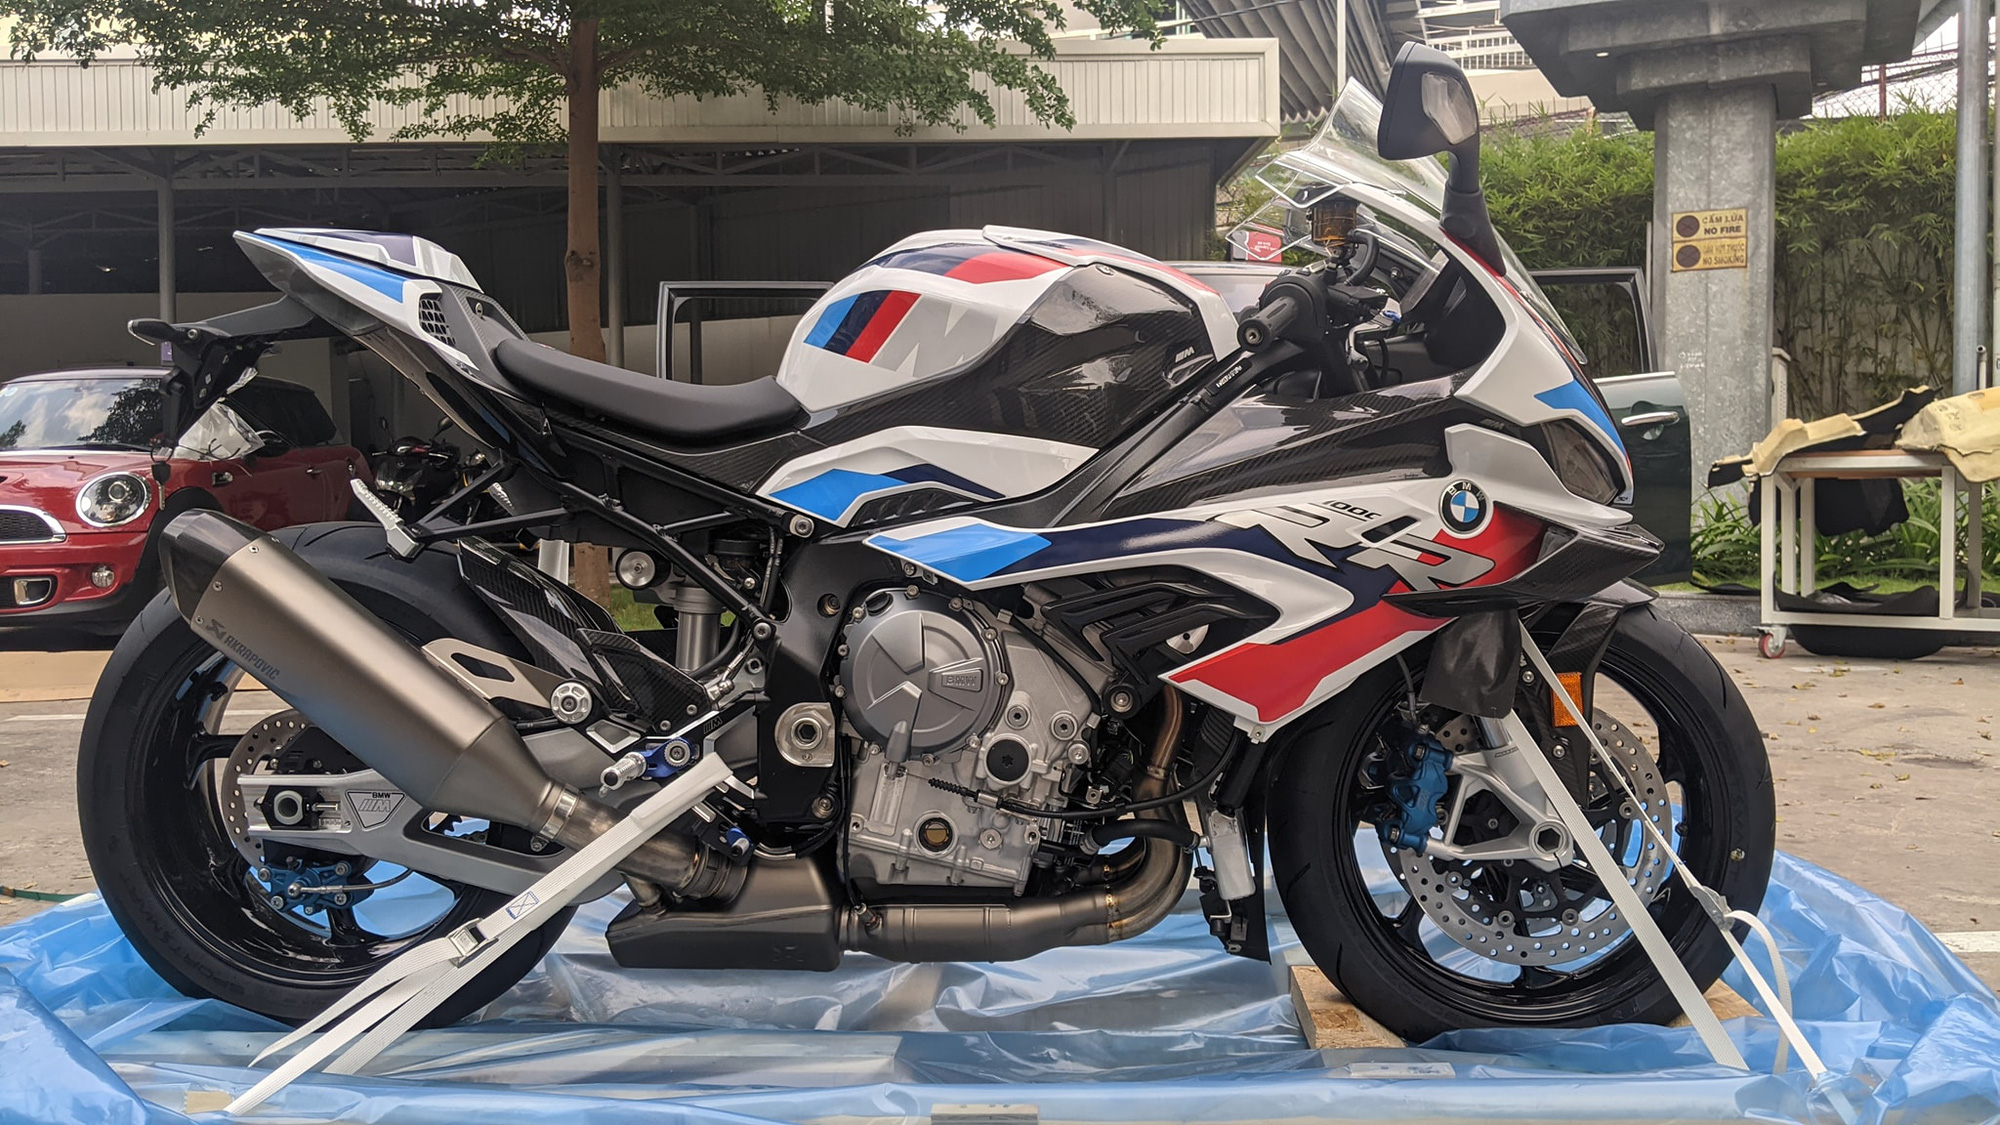 Siêu mô tô BMW M 1000 RR giá 1,6 tỷ đồng về Việt Nam: Cánh gió carbon hầm  hố, lô đầu 6 chiếc đã có chủ